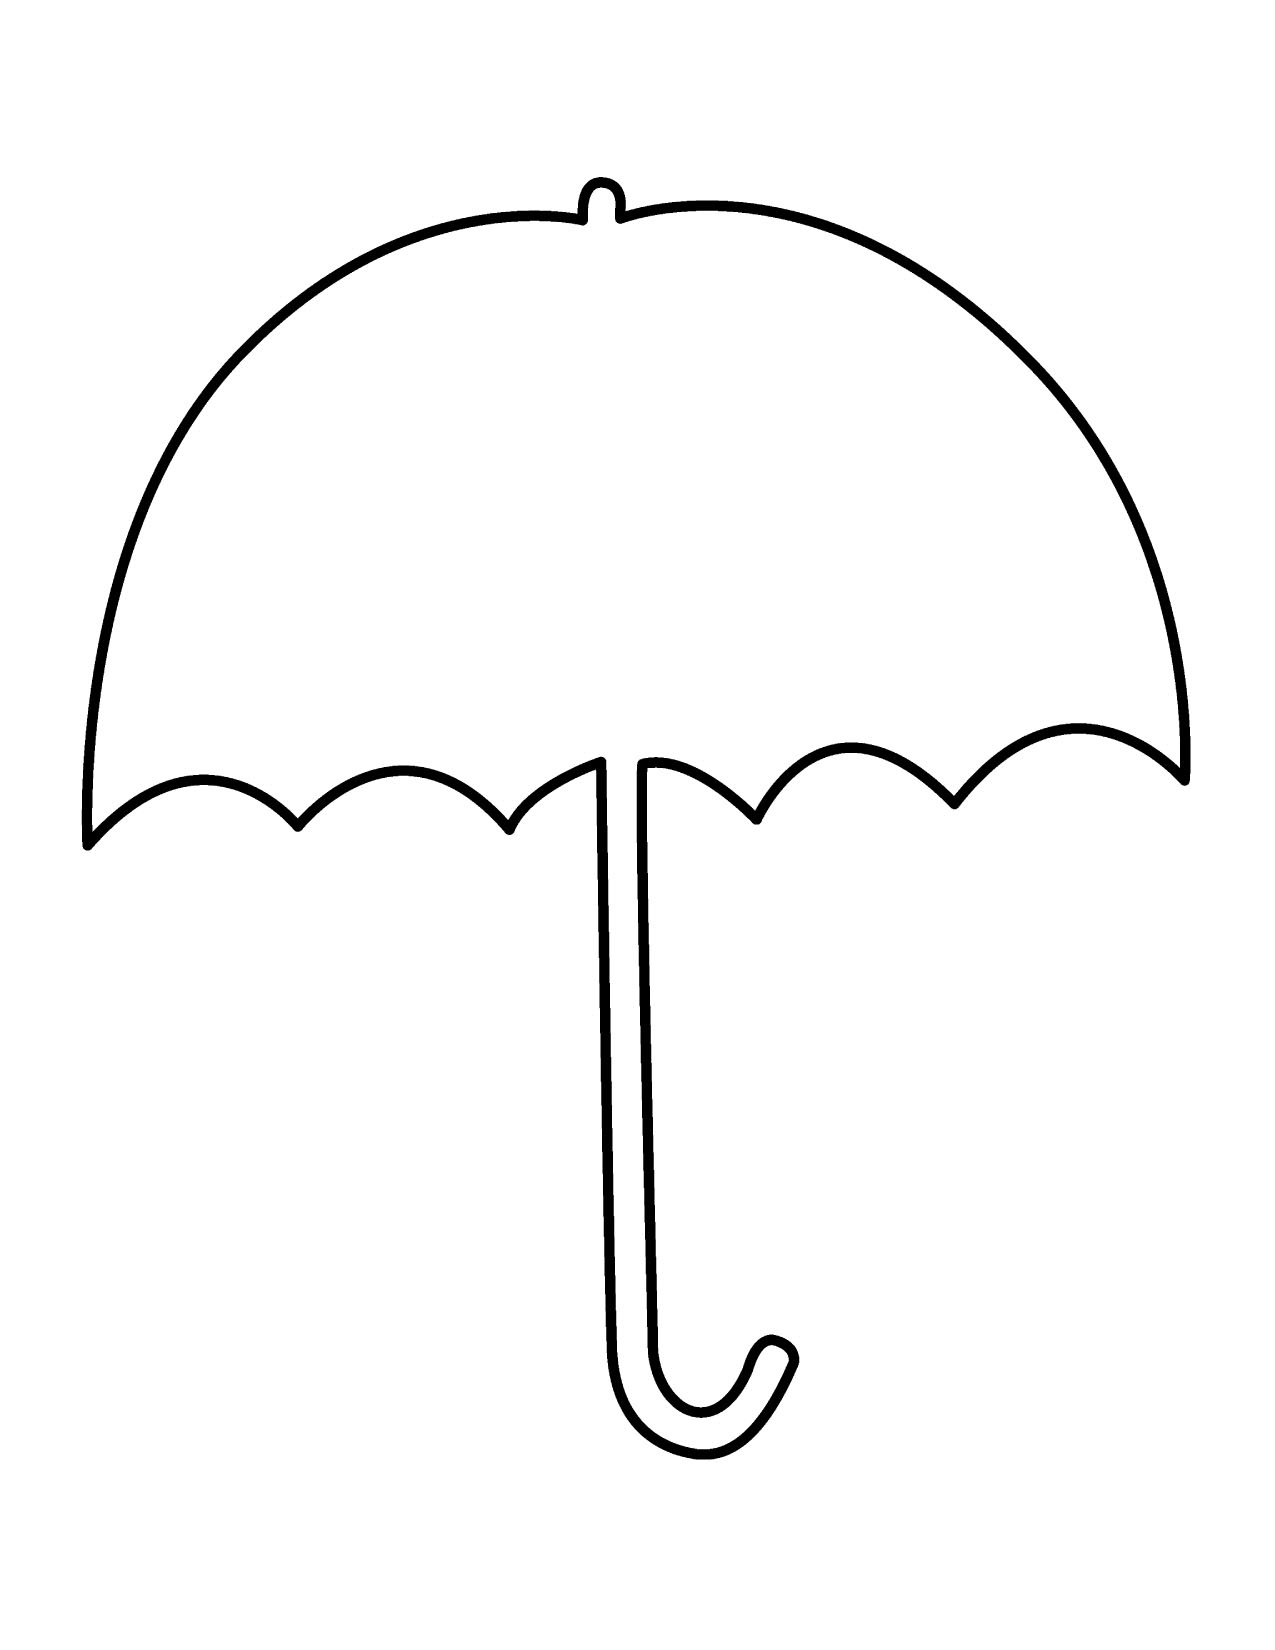 Umbrella clipart umbrella image umbrellas clipartix - Cliparting.com